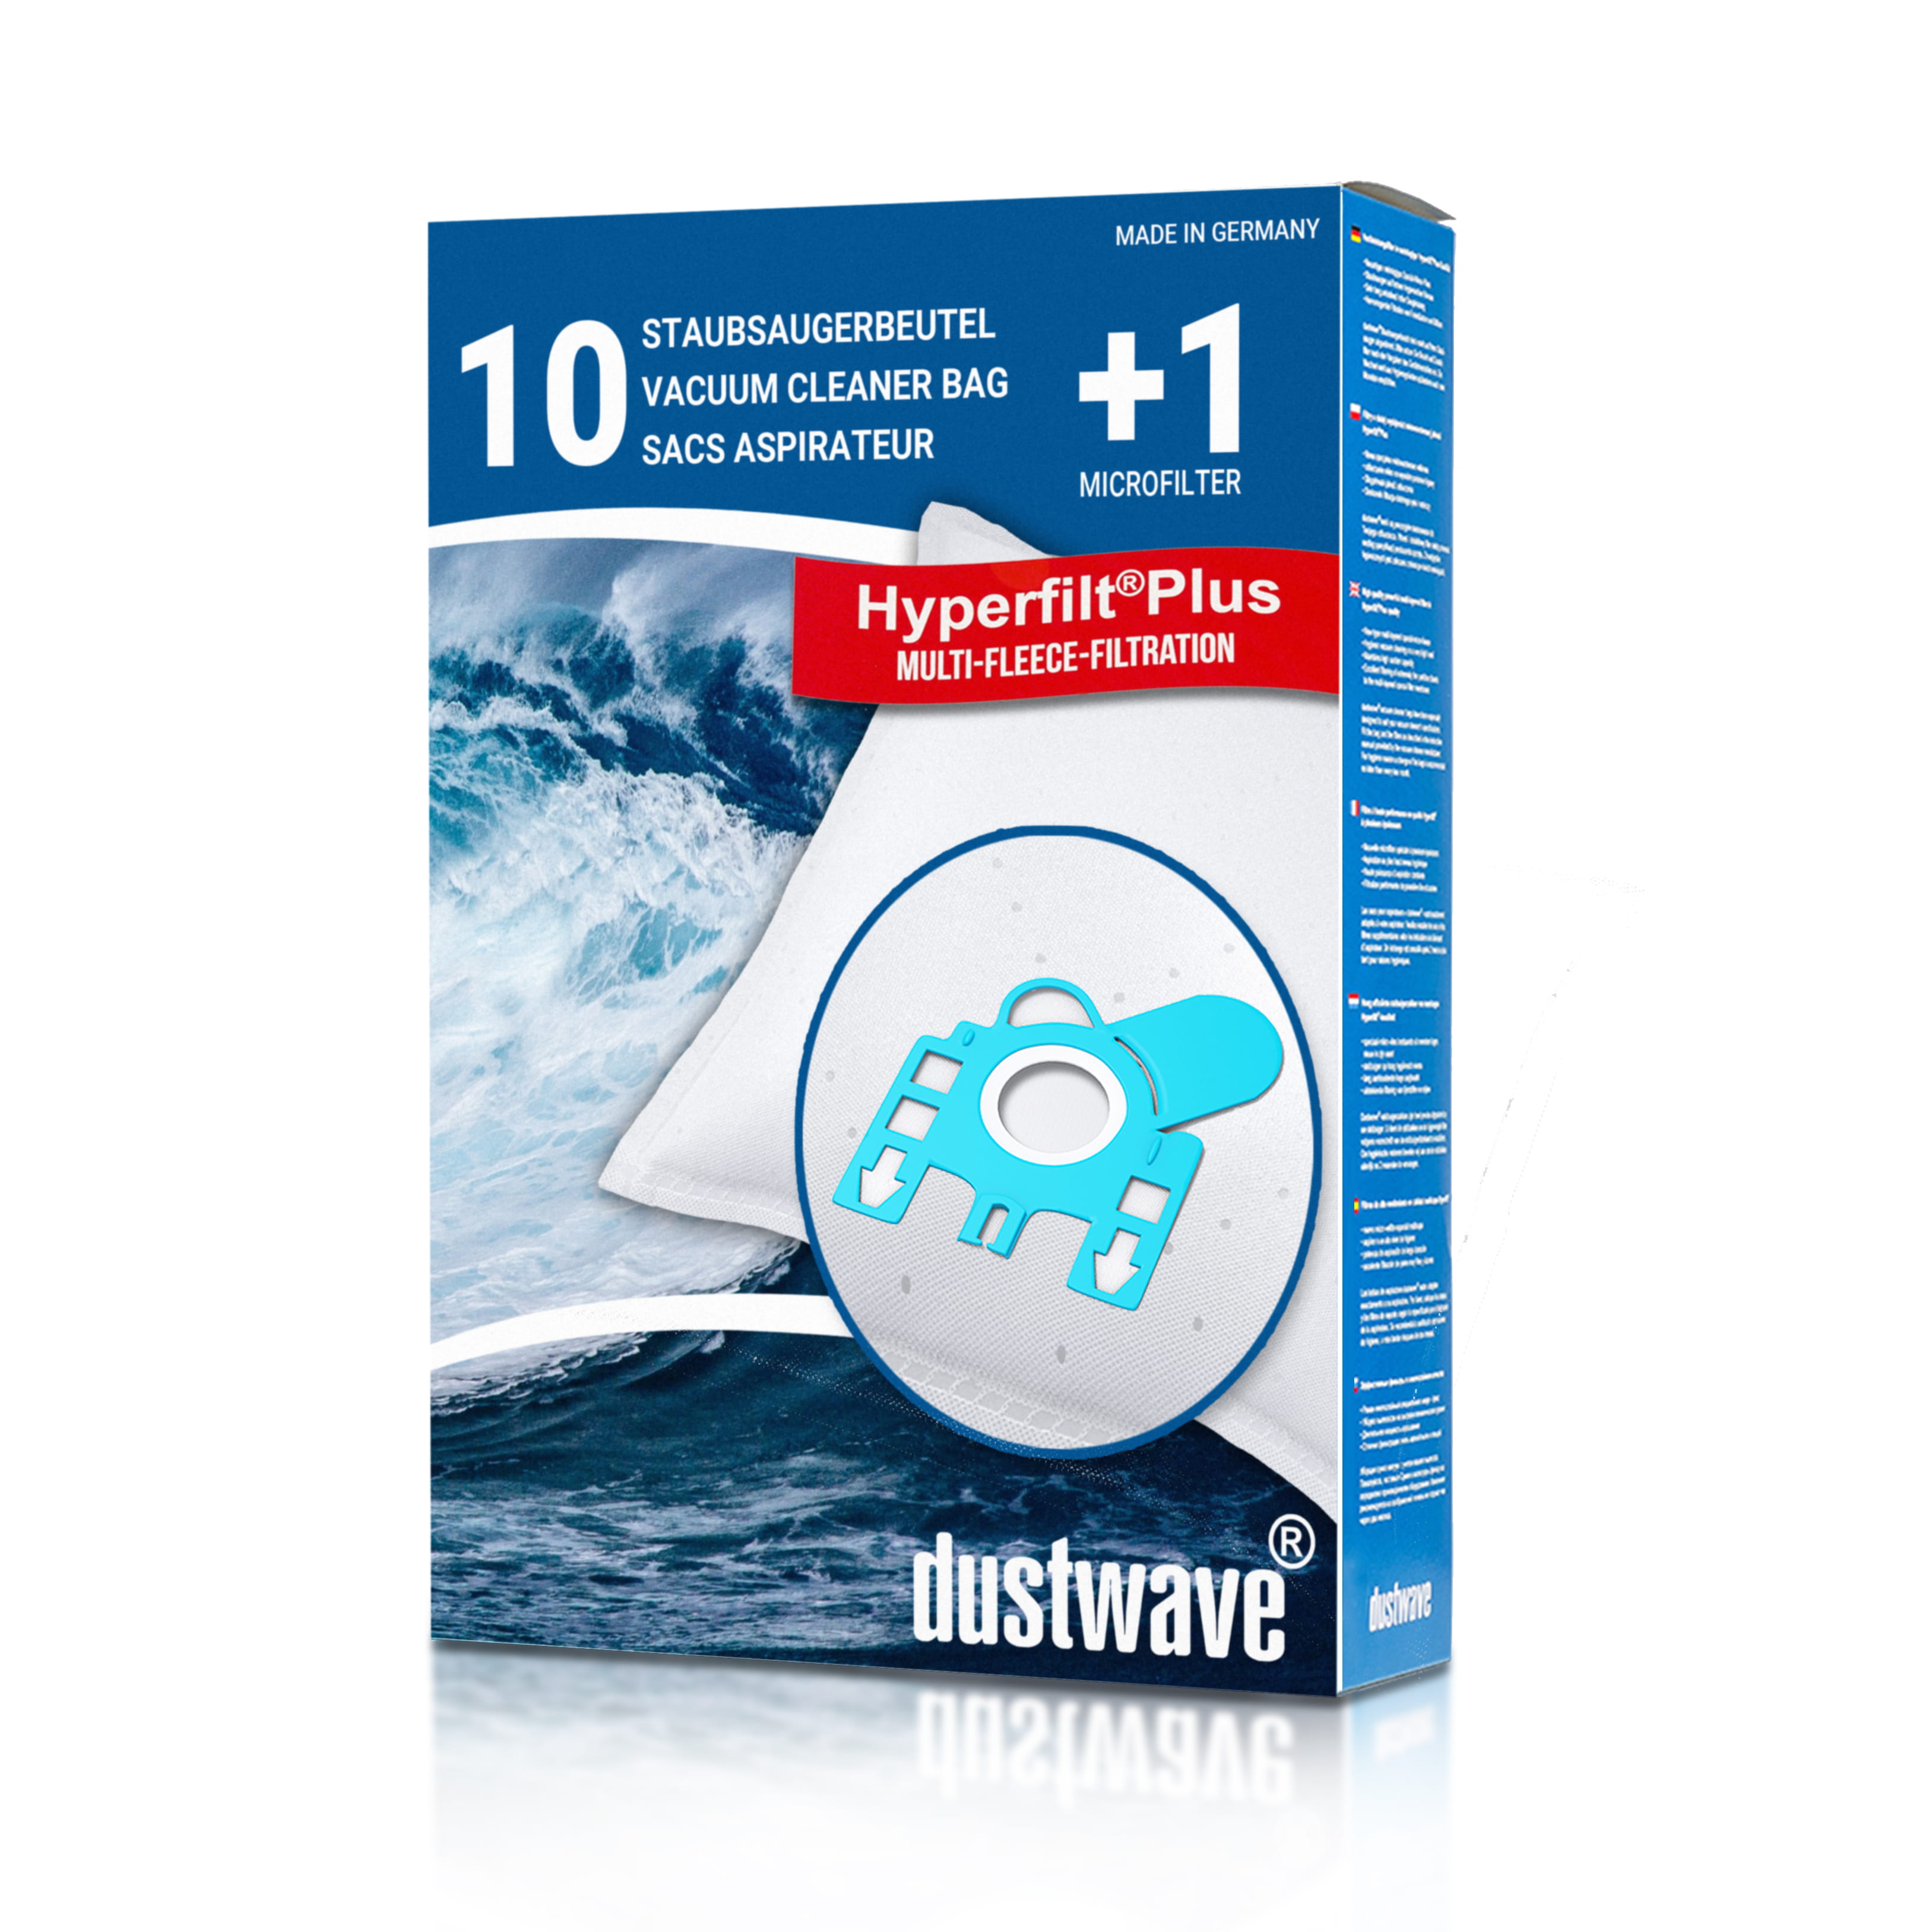 Dustwave® 10 Staubsaugerbeutel für Hoover SCT 30... 48 MicroSpace - hocheffizient, mehrlagiges Mikrovlies mit Hygieneverschluss - Made in Germany